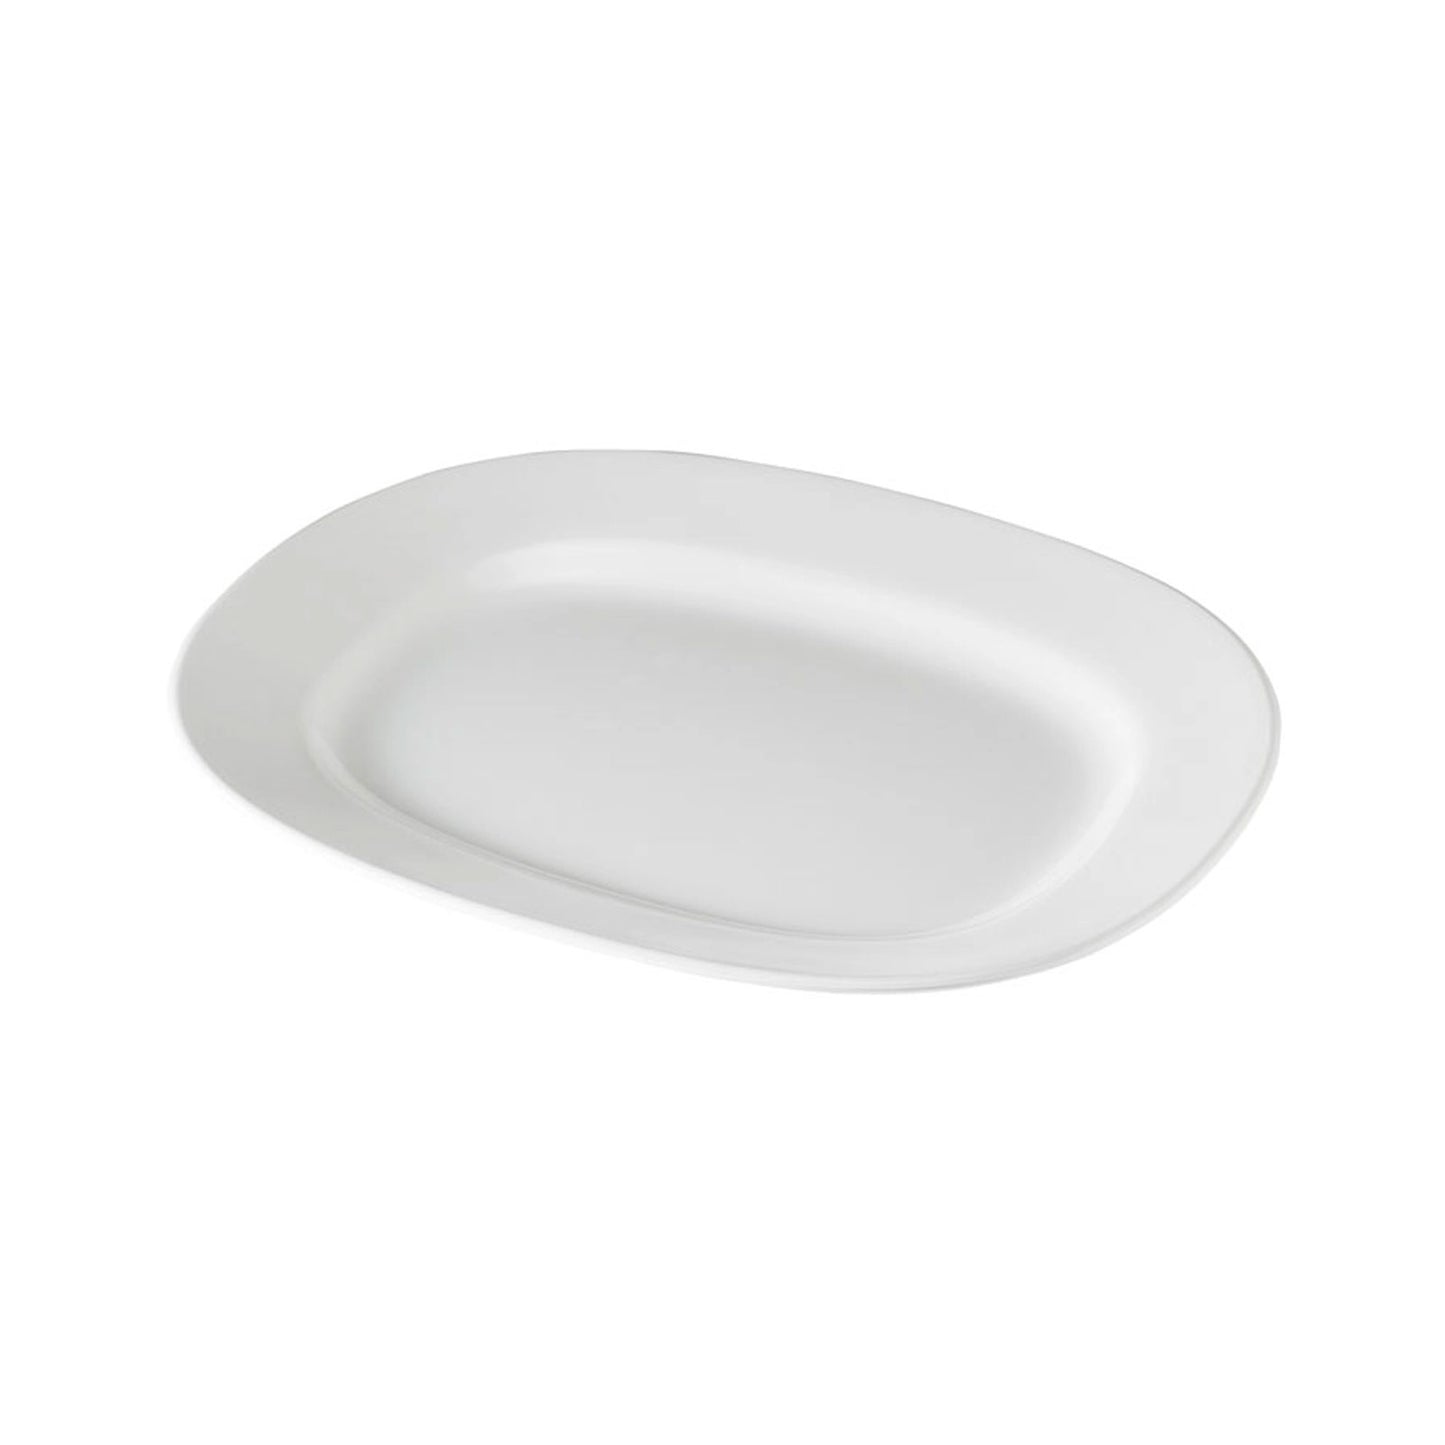 White Melamine Serving Platter, 14"